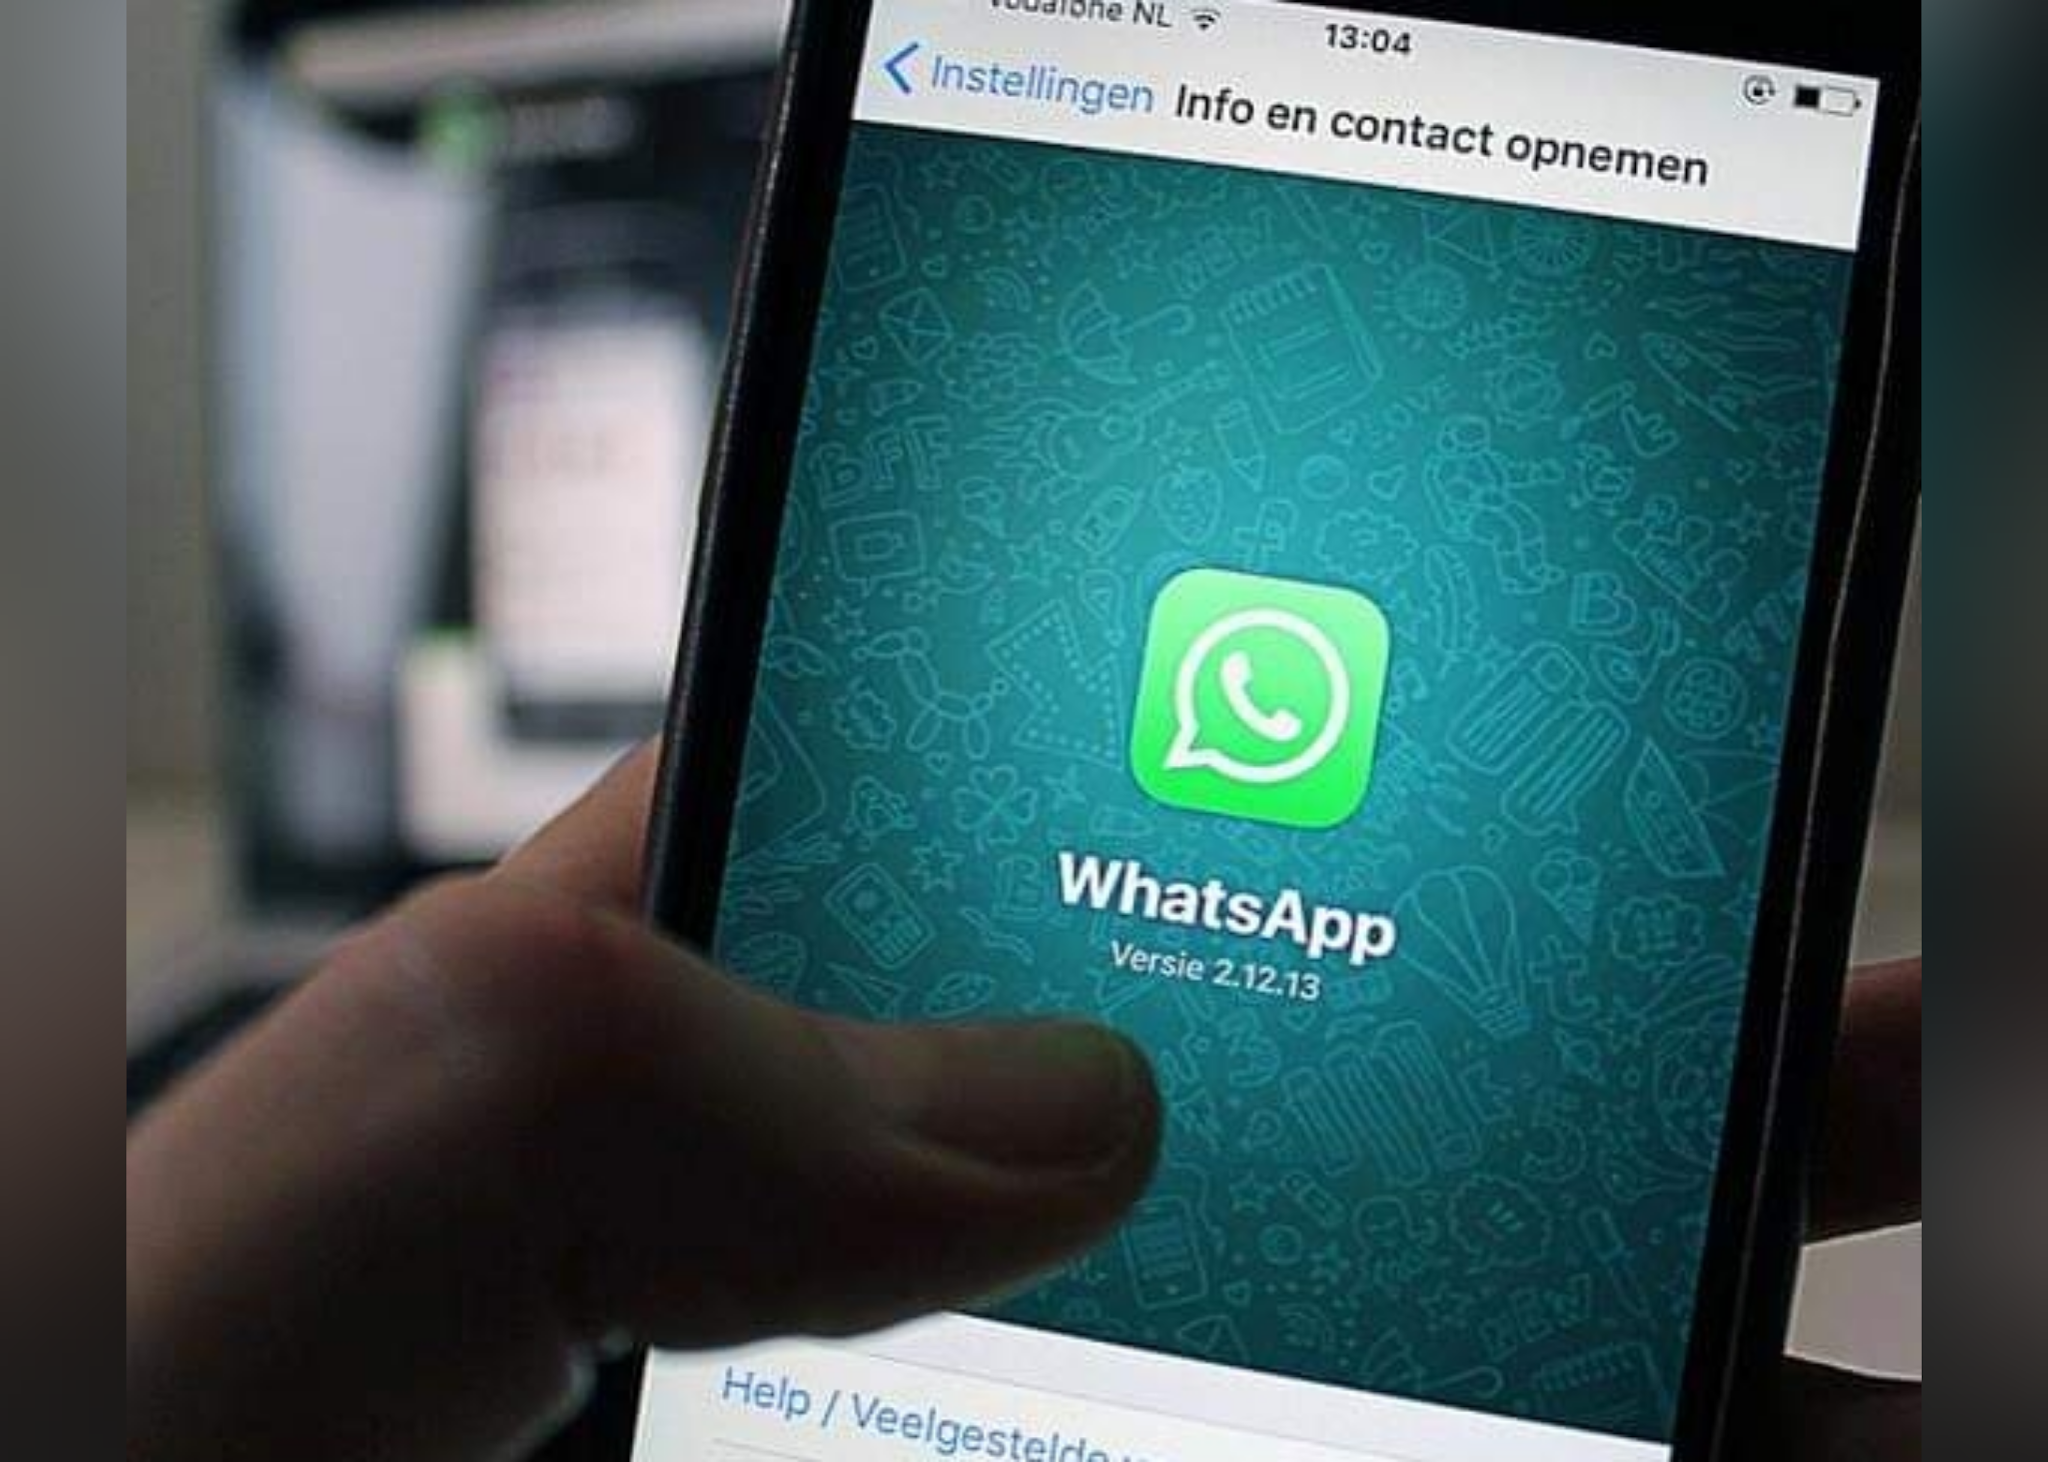 Pebão:Começa a valer hoje nova política de privacidade do WhatsApp